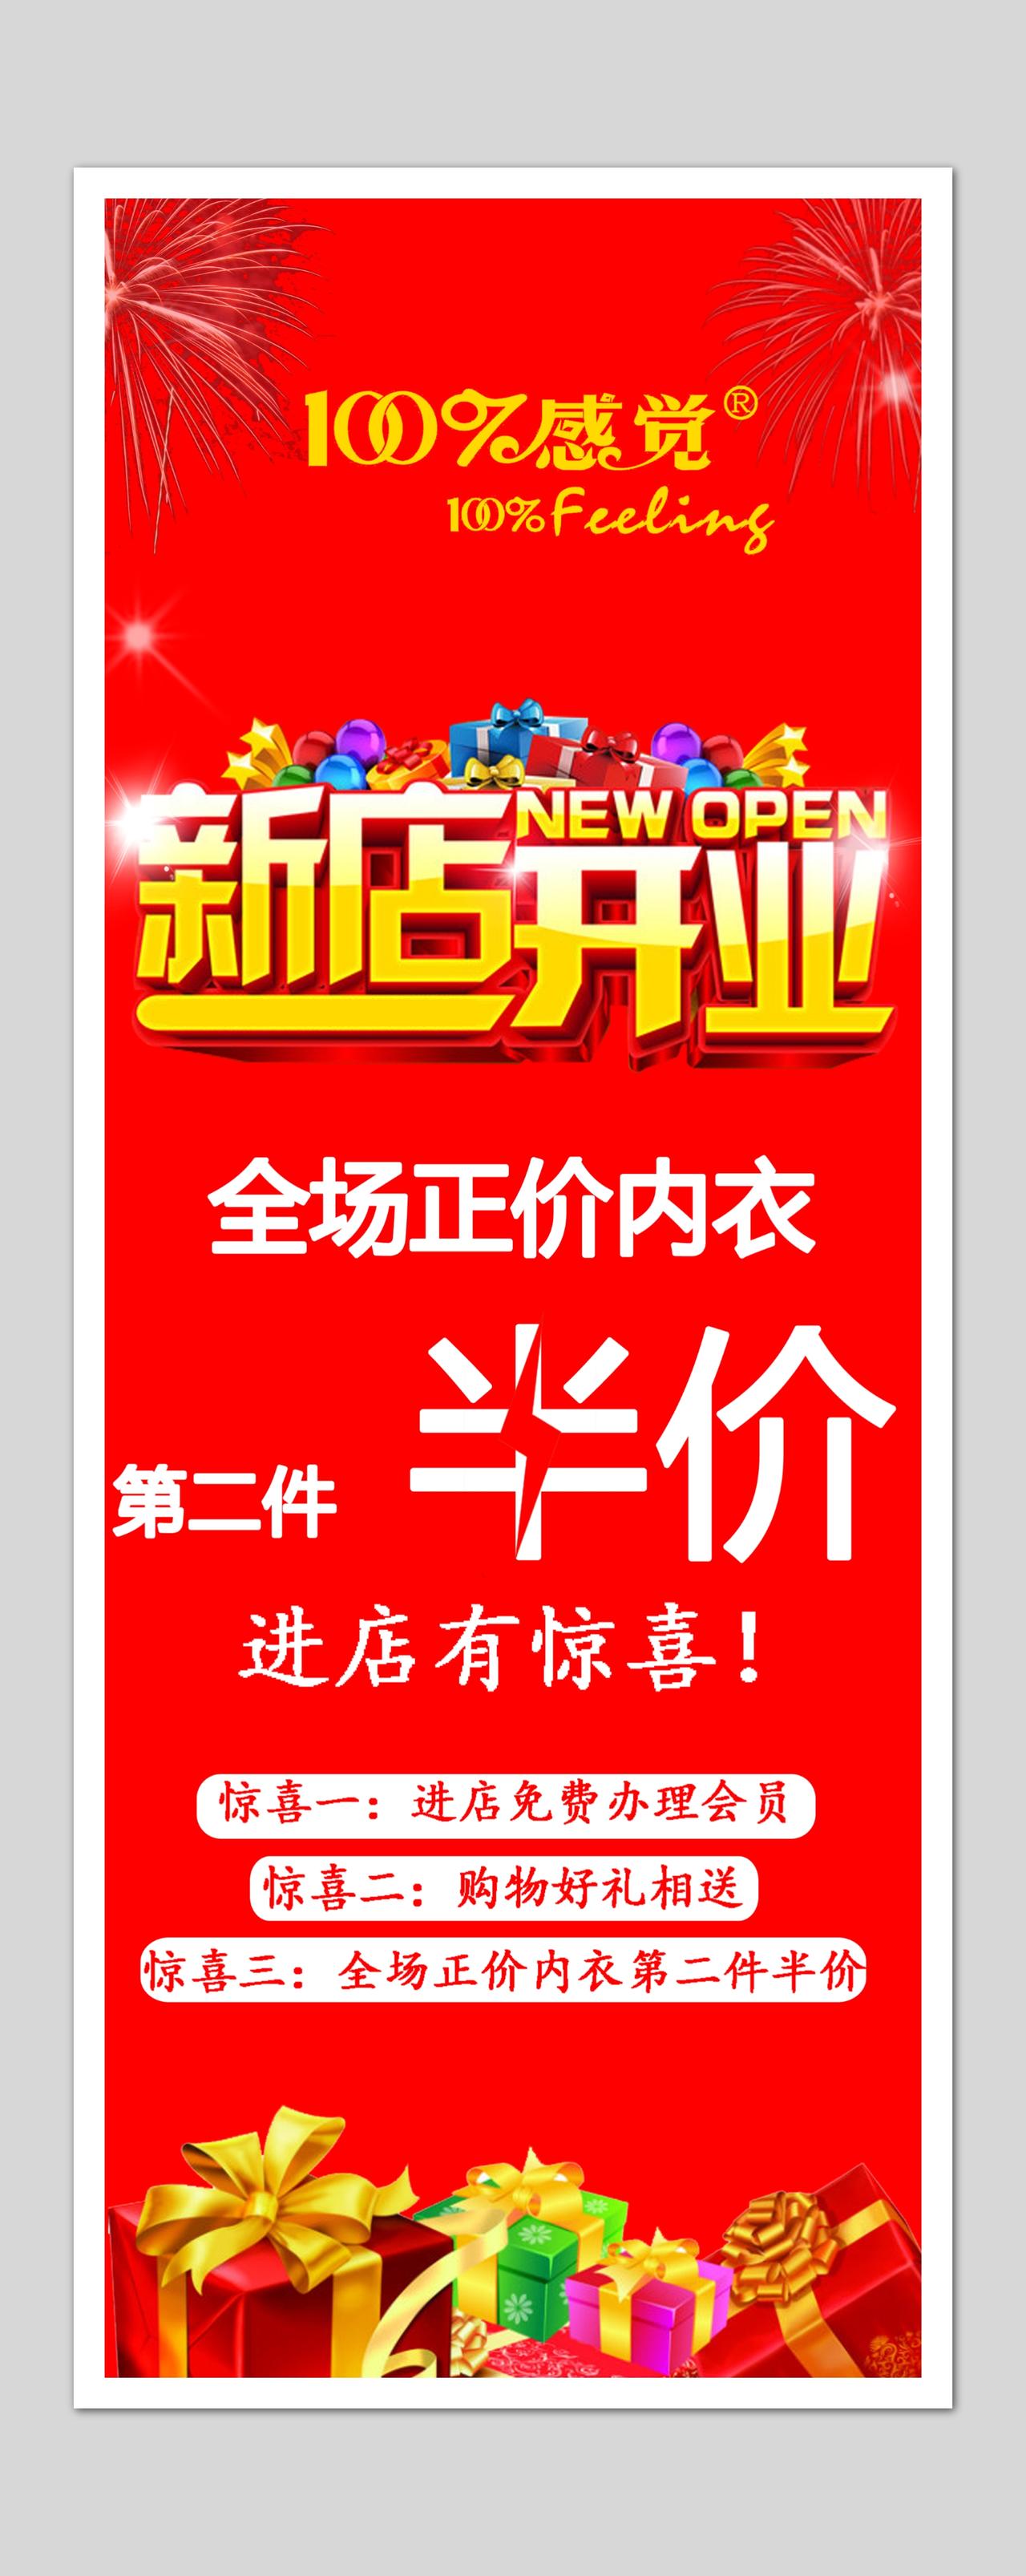 新店开业促销红色喜庆半价活动海报模板